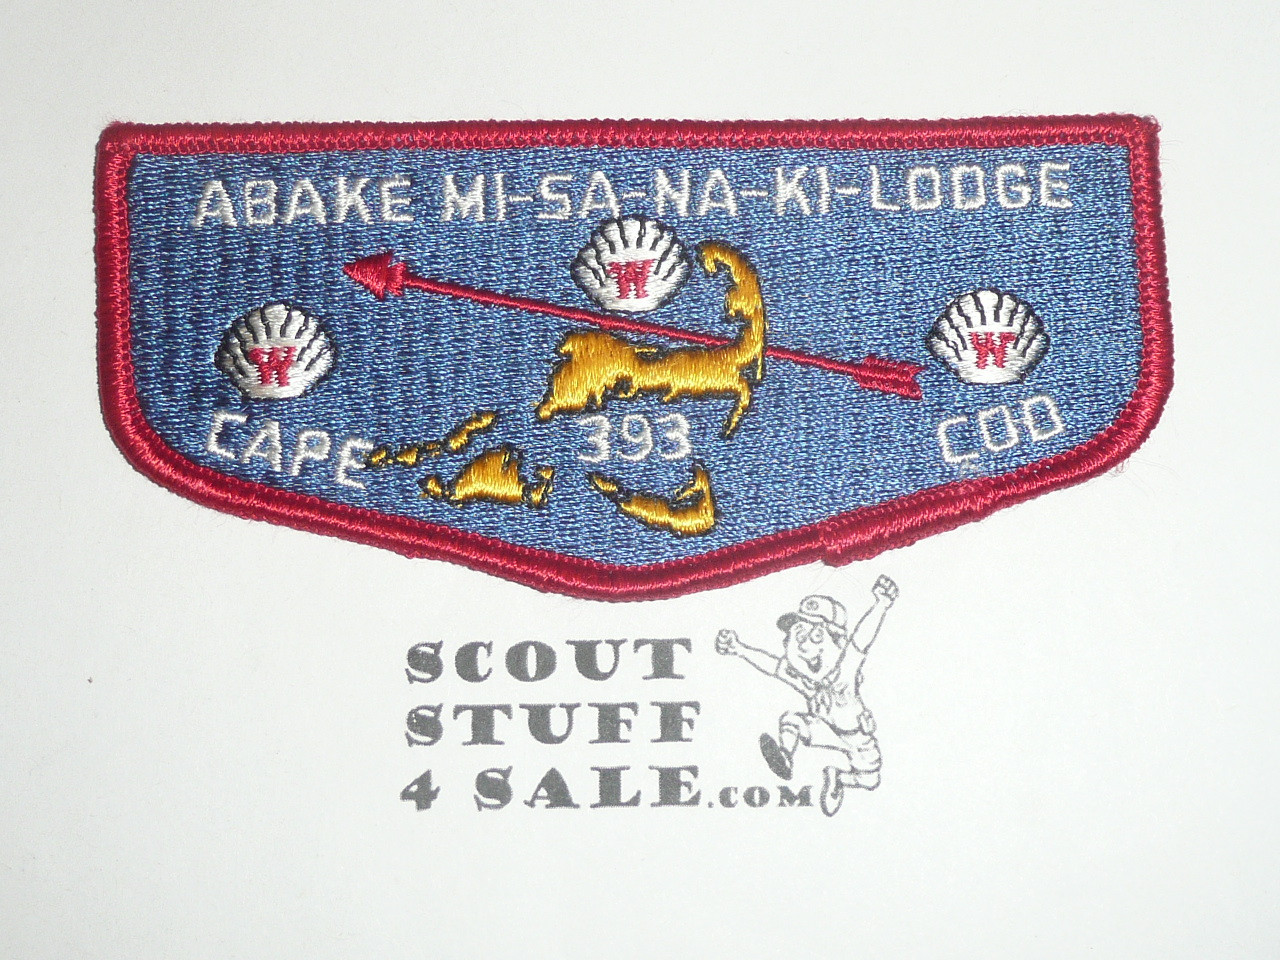 Order of the Arrow Lodge #393 Abake-Mi-Sa-Na-Ki s3 Flap Patch - Boy Scout